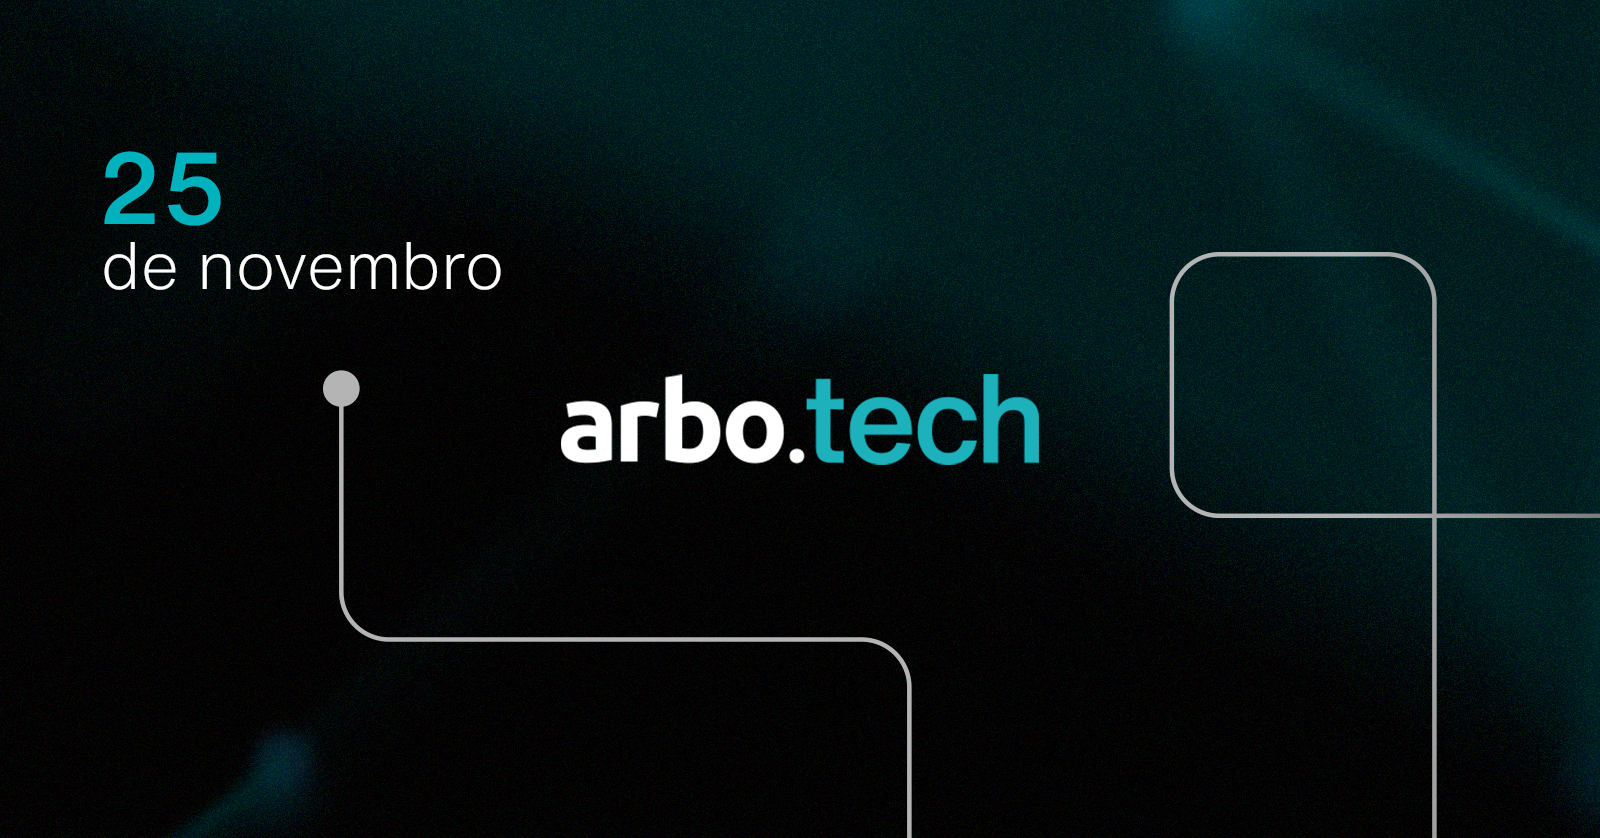 arbo.tech